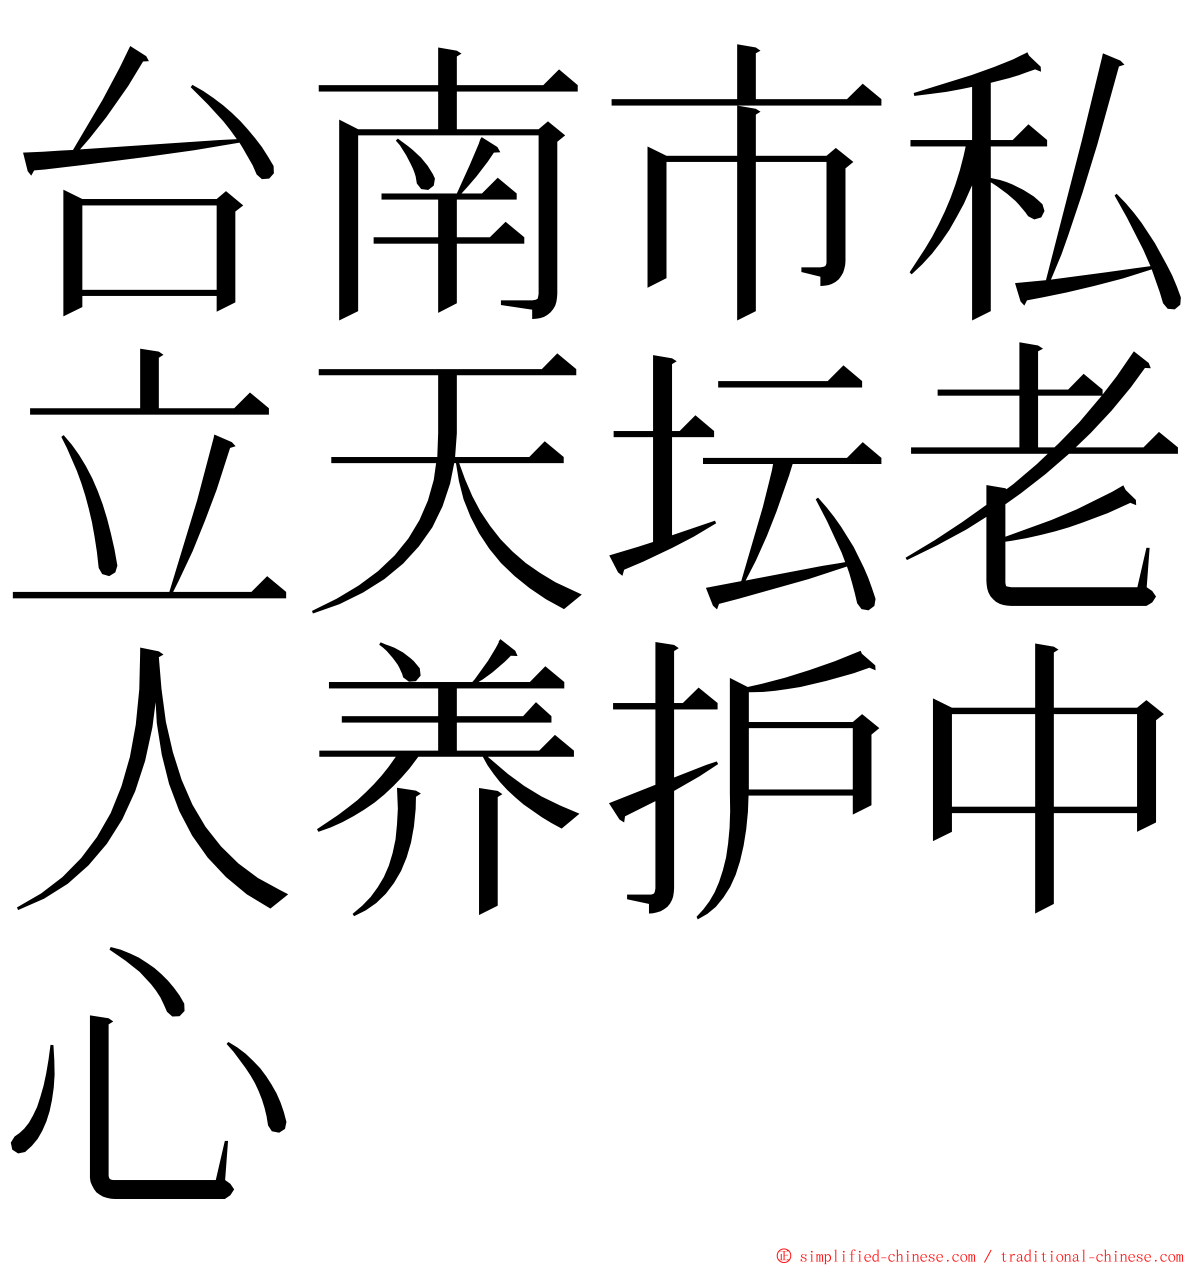 台南市私立天坛老人养护中心 ming font